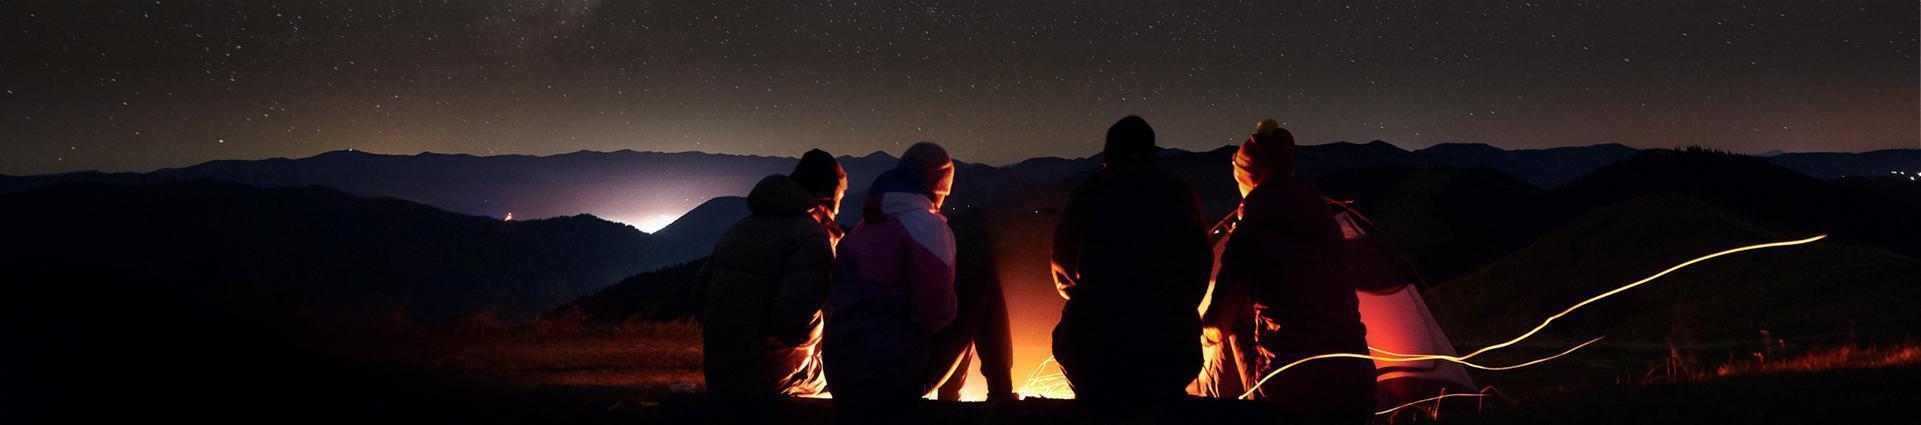 grupa przyjaciół przy ognisku podczas gwieździstej nocy banner